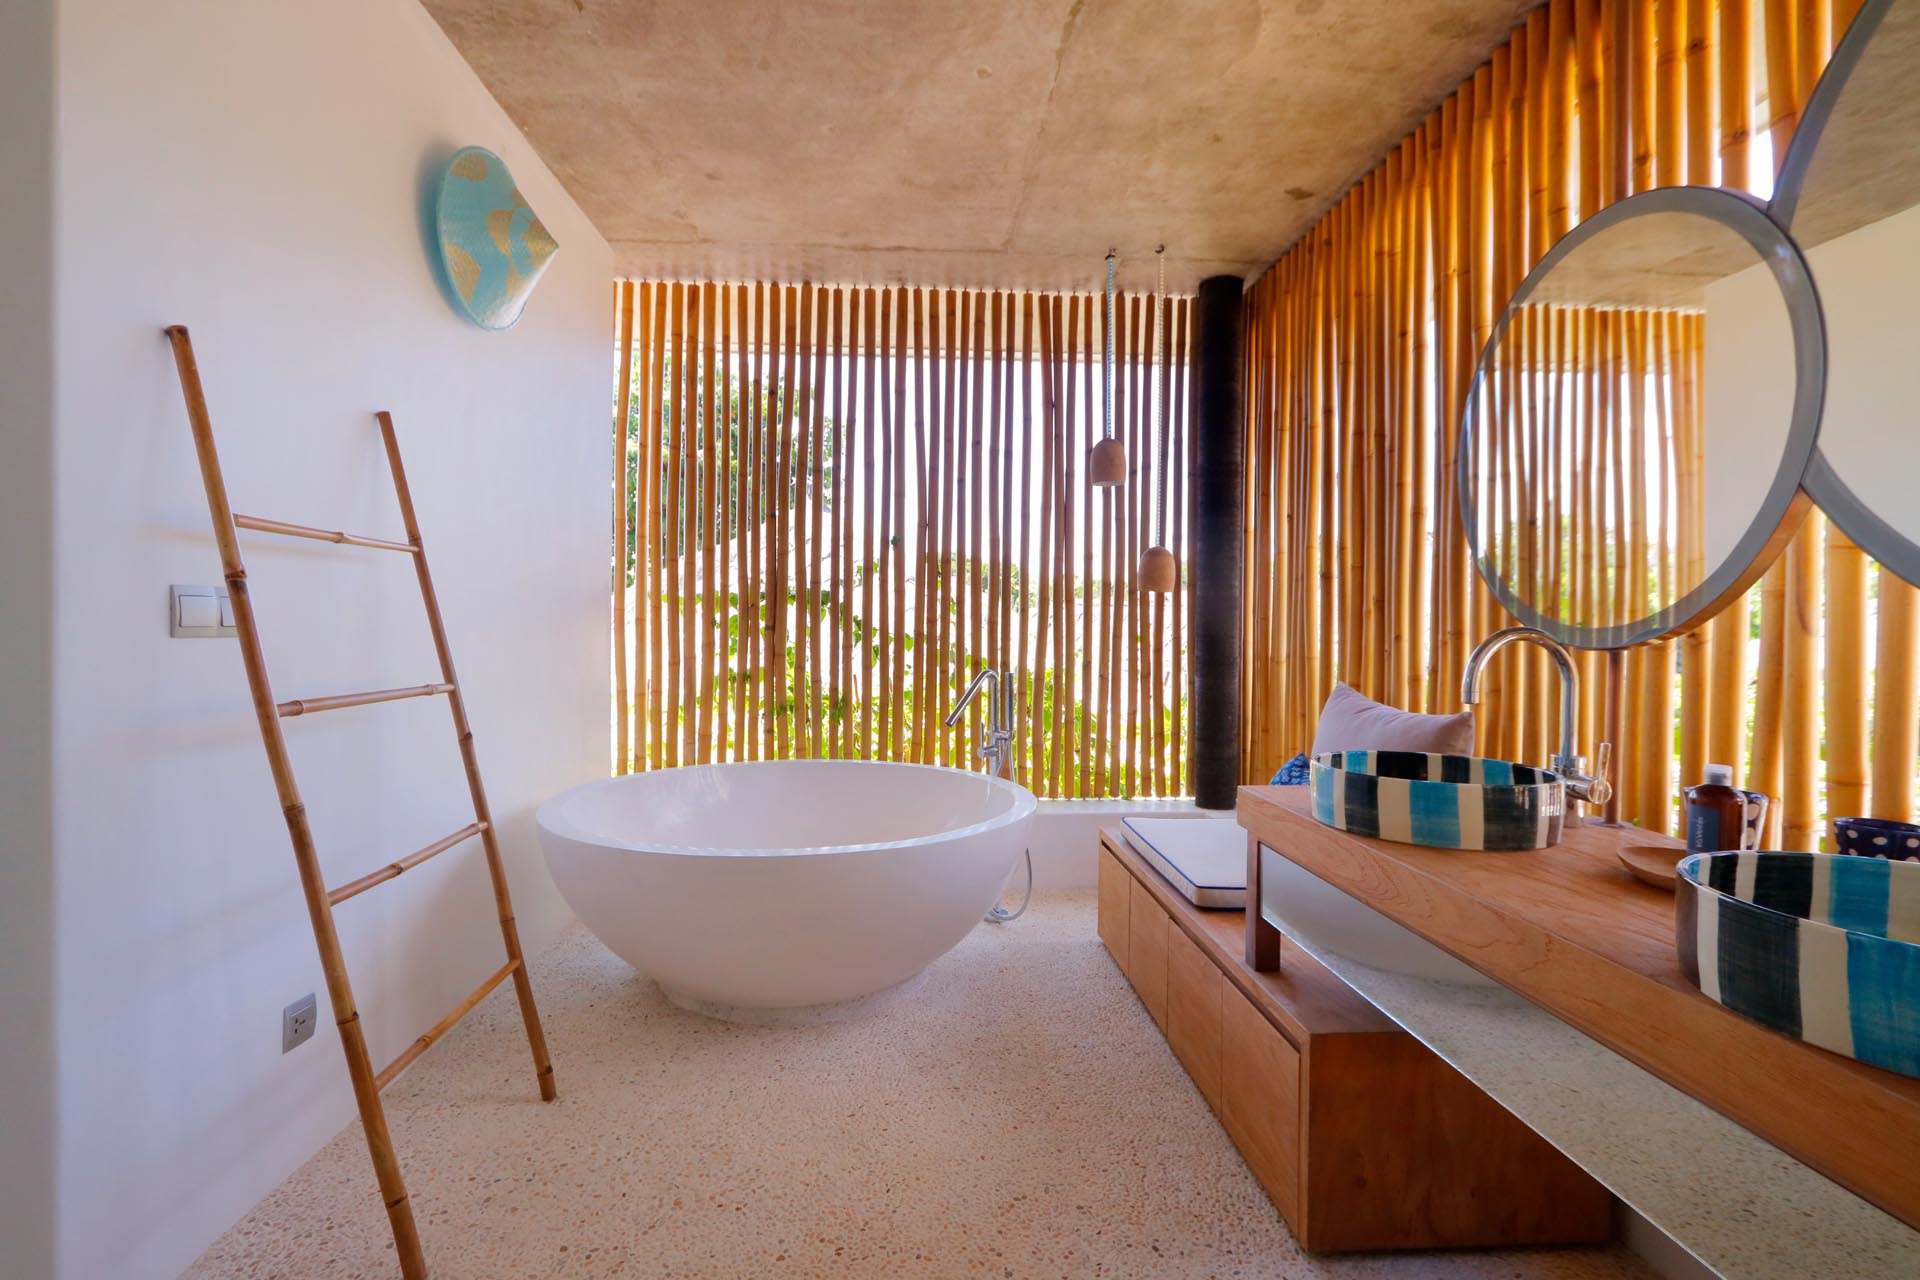 Một phòng tắm hiện đại với các bức bình phong bằng tre bổ sung thêm yếu tố thiết kế tự nhiên cũng mang lại sự riêng tư.